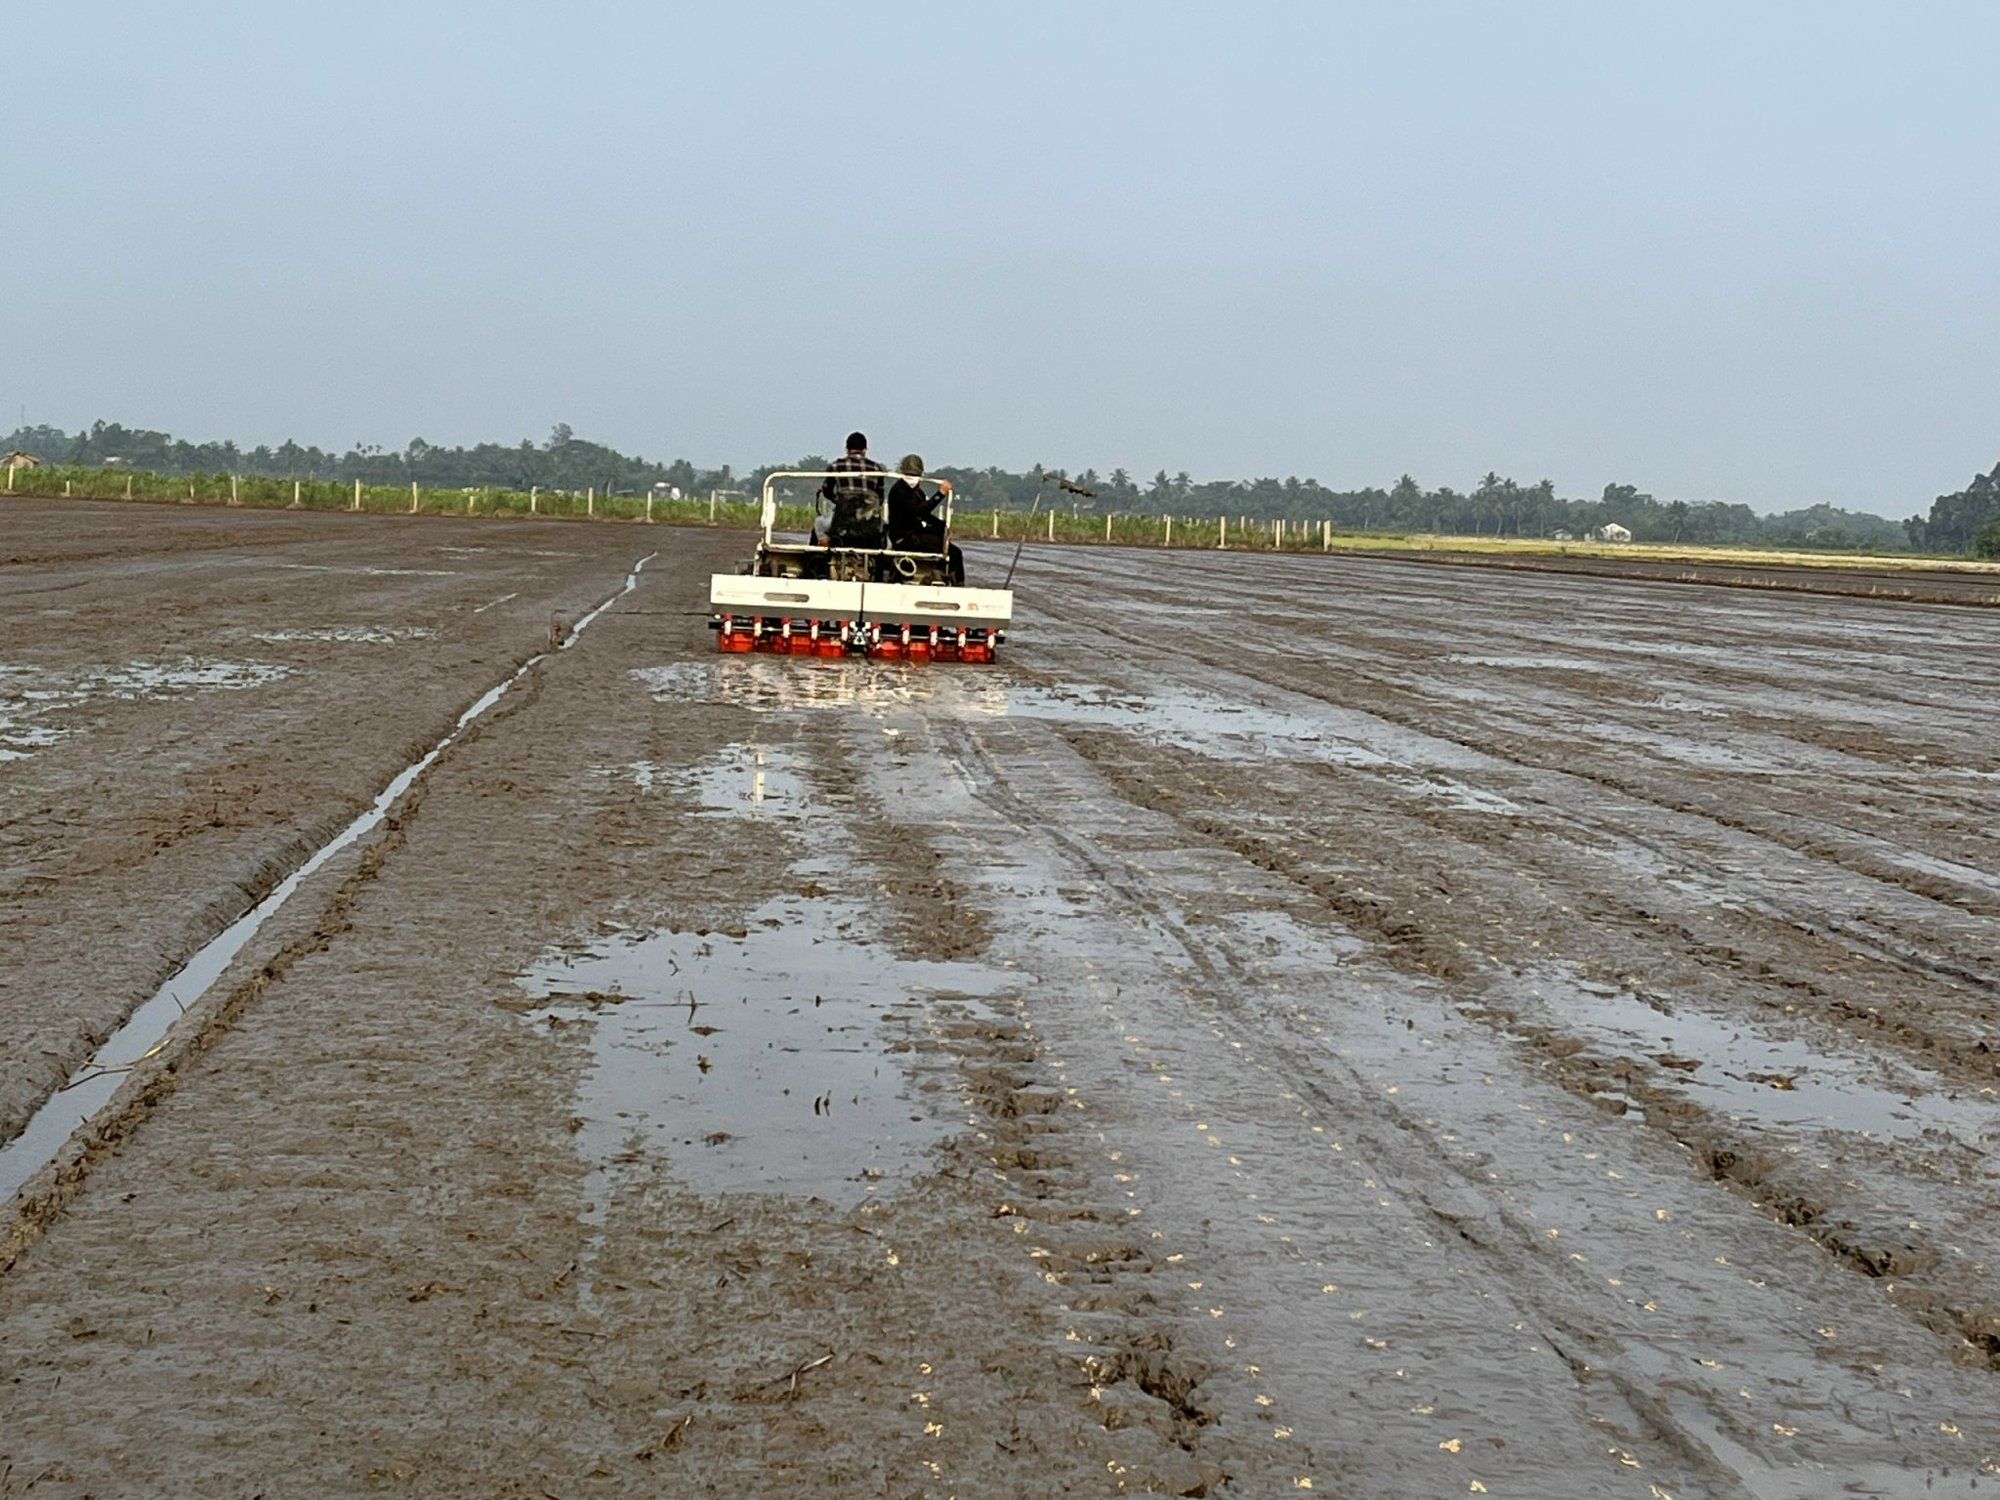 Ứng dụng máy sạ cụm trong giảm giống gieo sạ trên cây lúa tại Đồng bằng Sông Cửu Long - Ảnh 5.